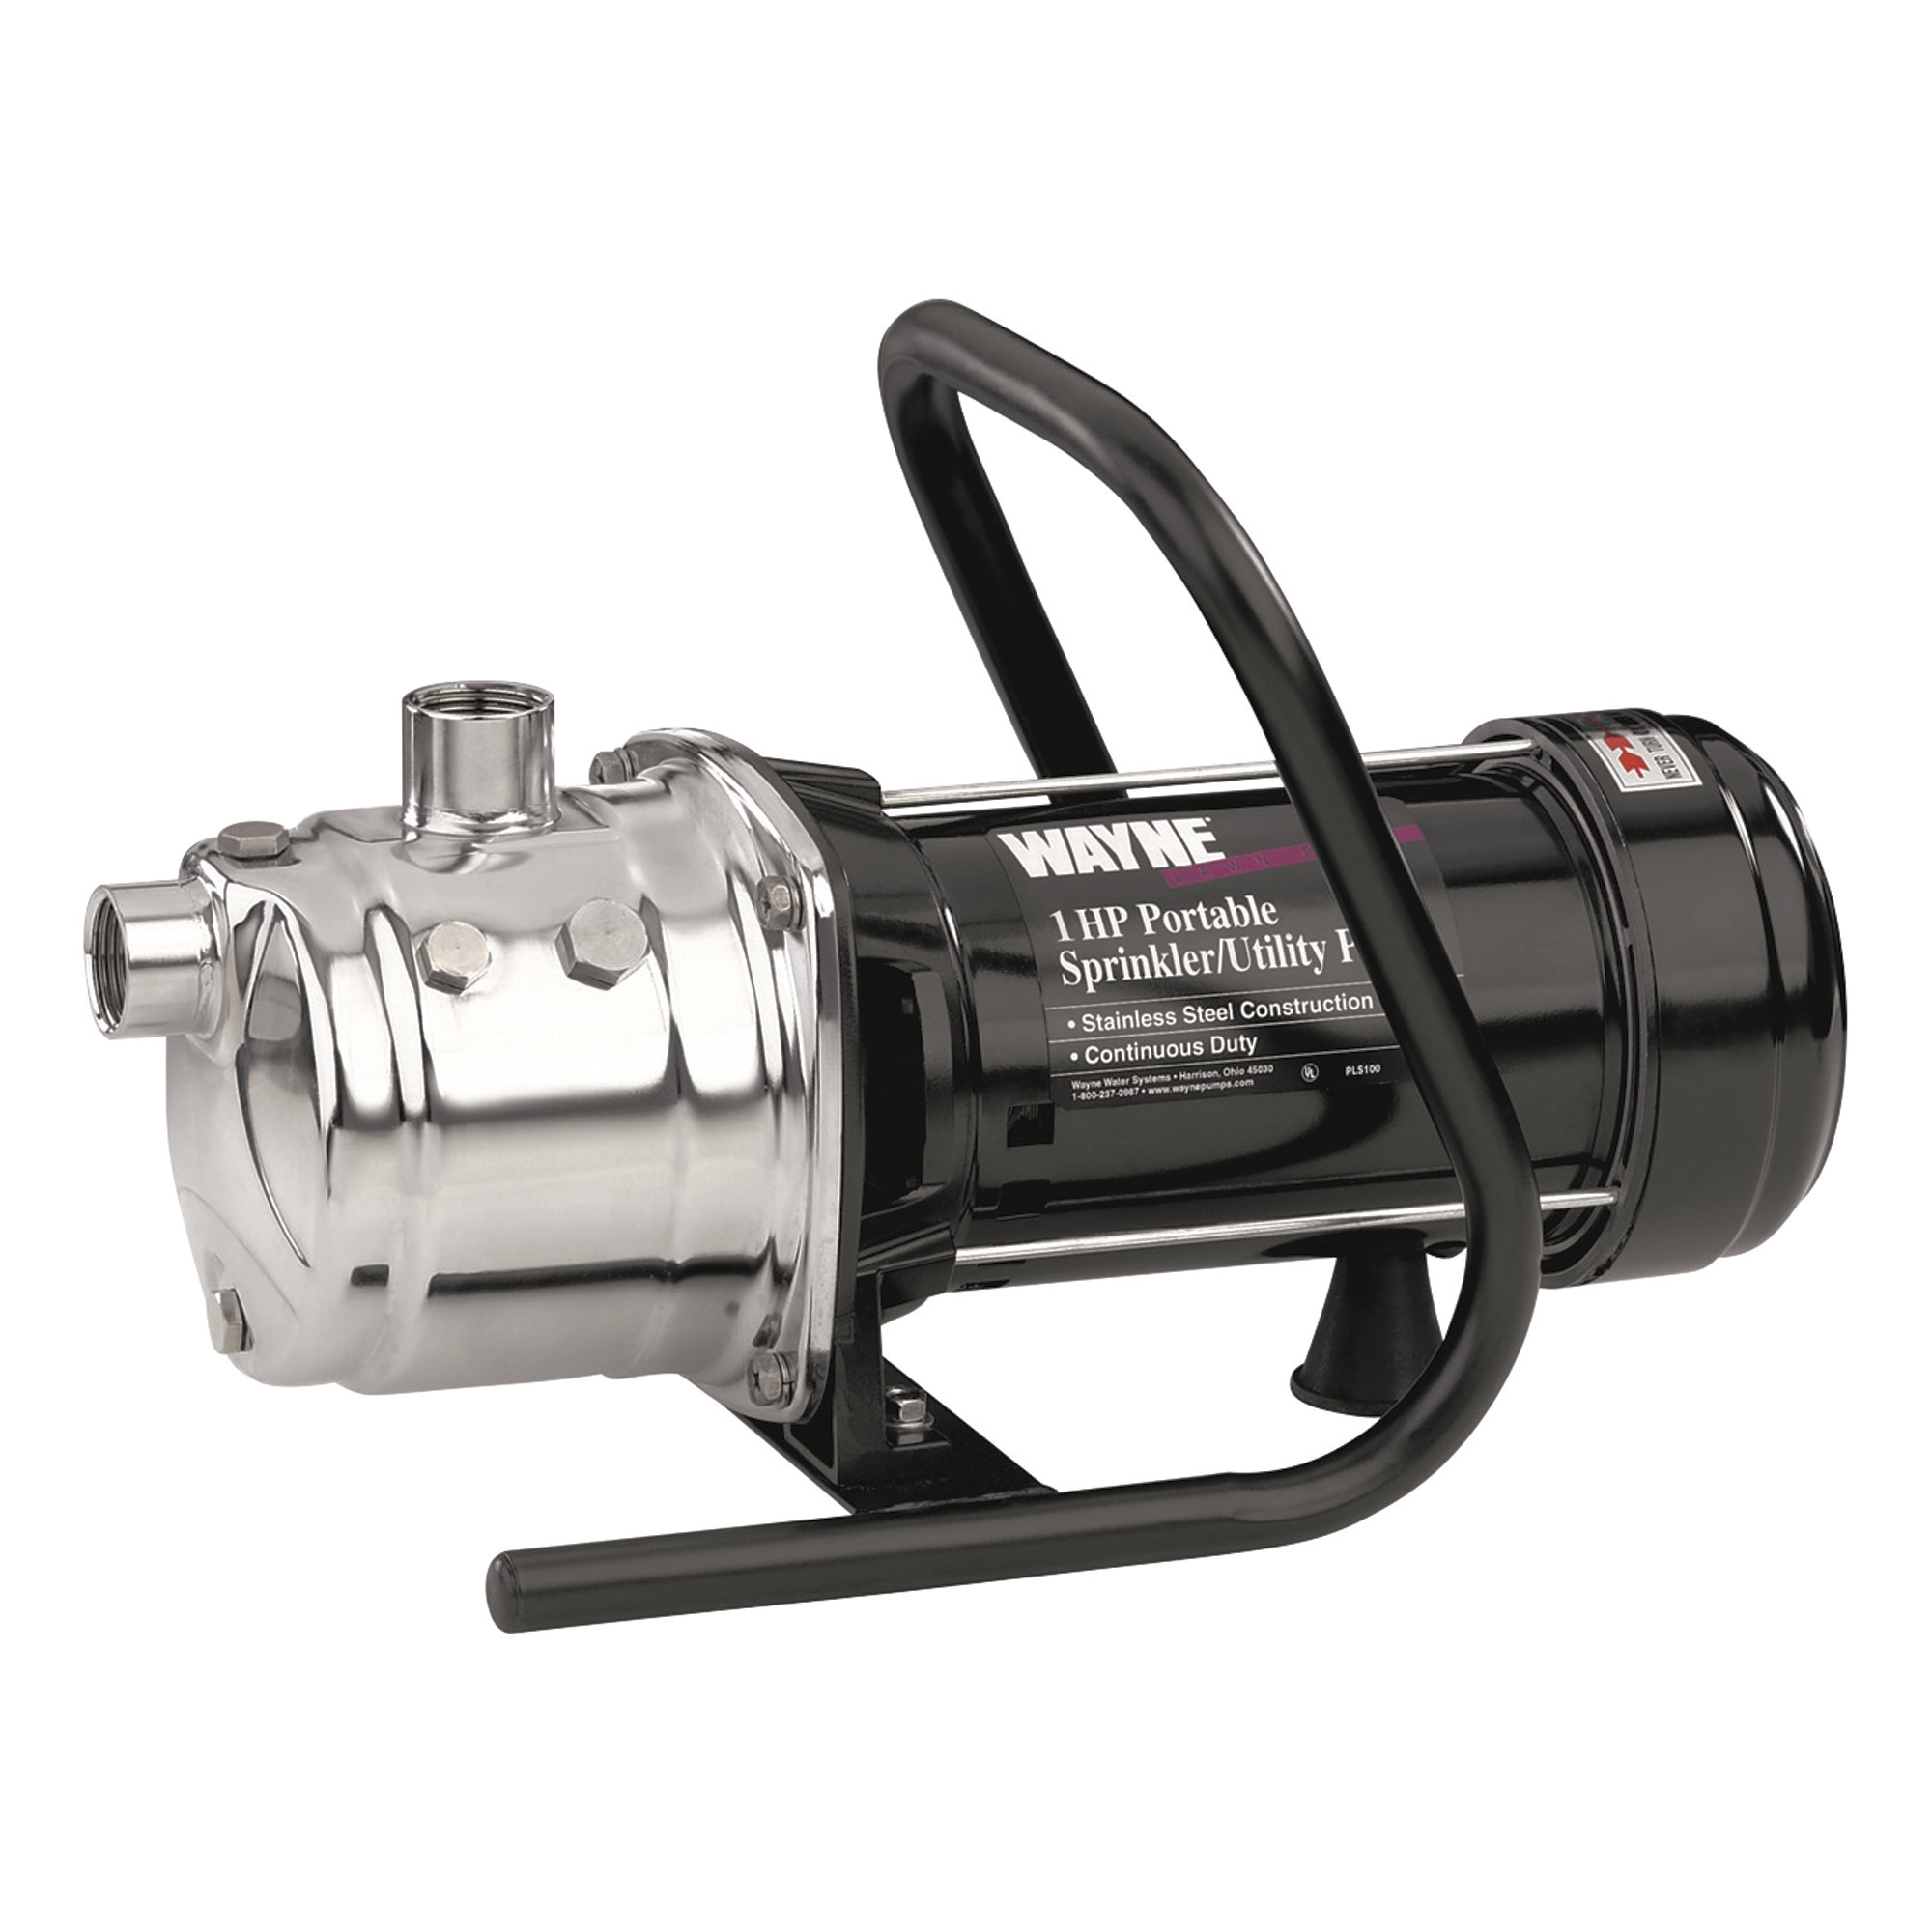 Wayne Stainless Steel Self-Priming Utility/Sprinkler Booster Water Pump â 720 GPH, 1 HP, 1Inch, Model PLS100